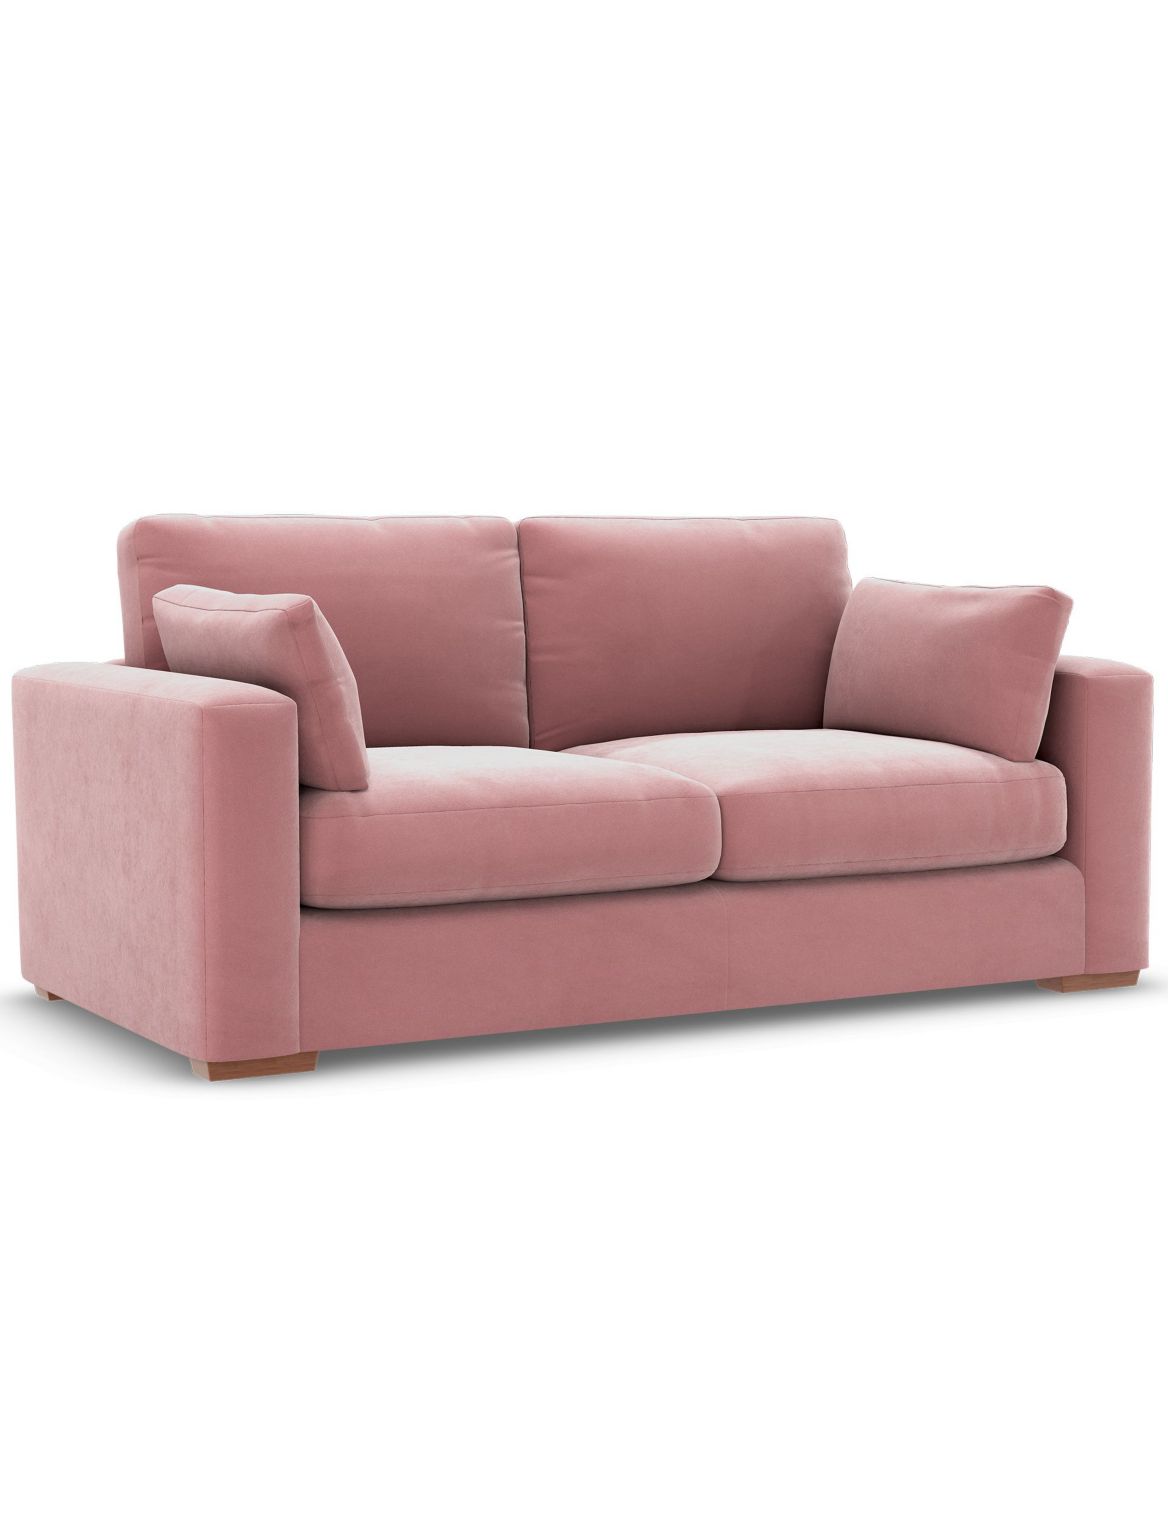 Boston Large Sofa pink